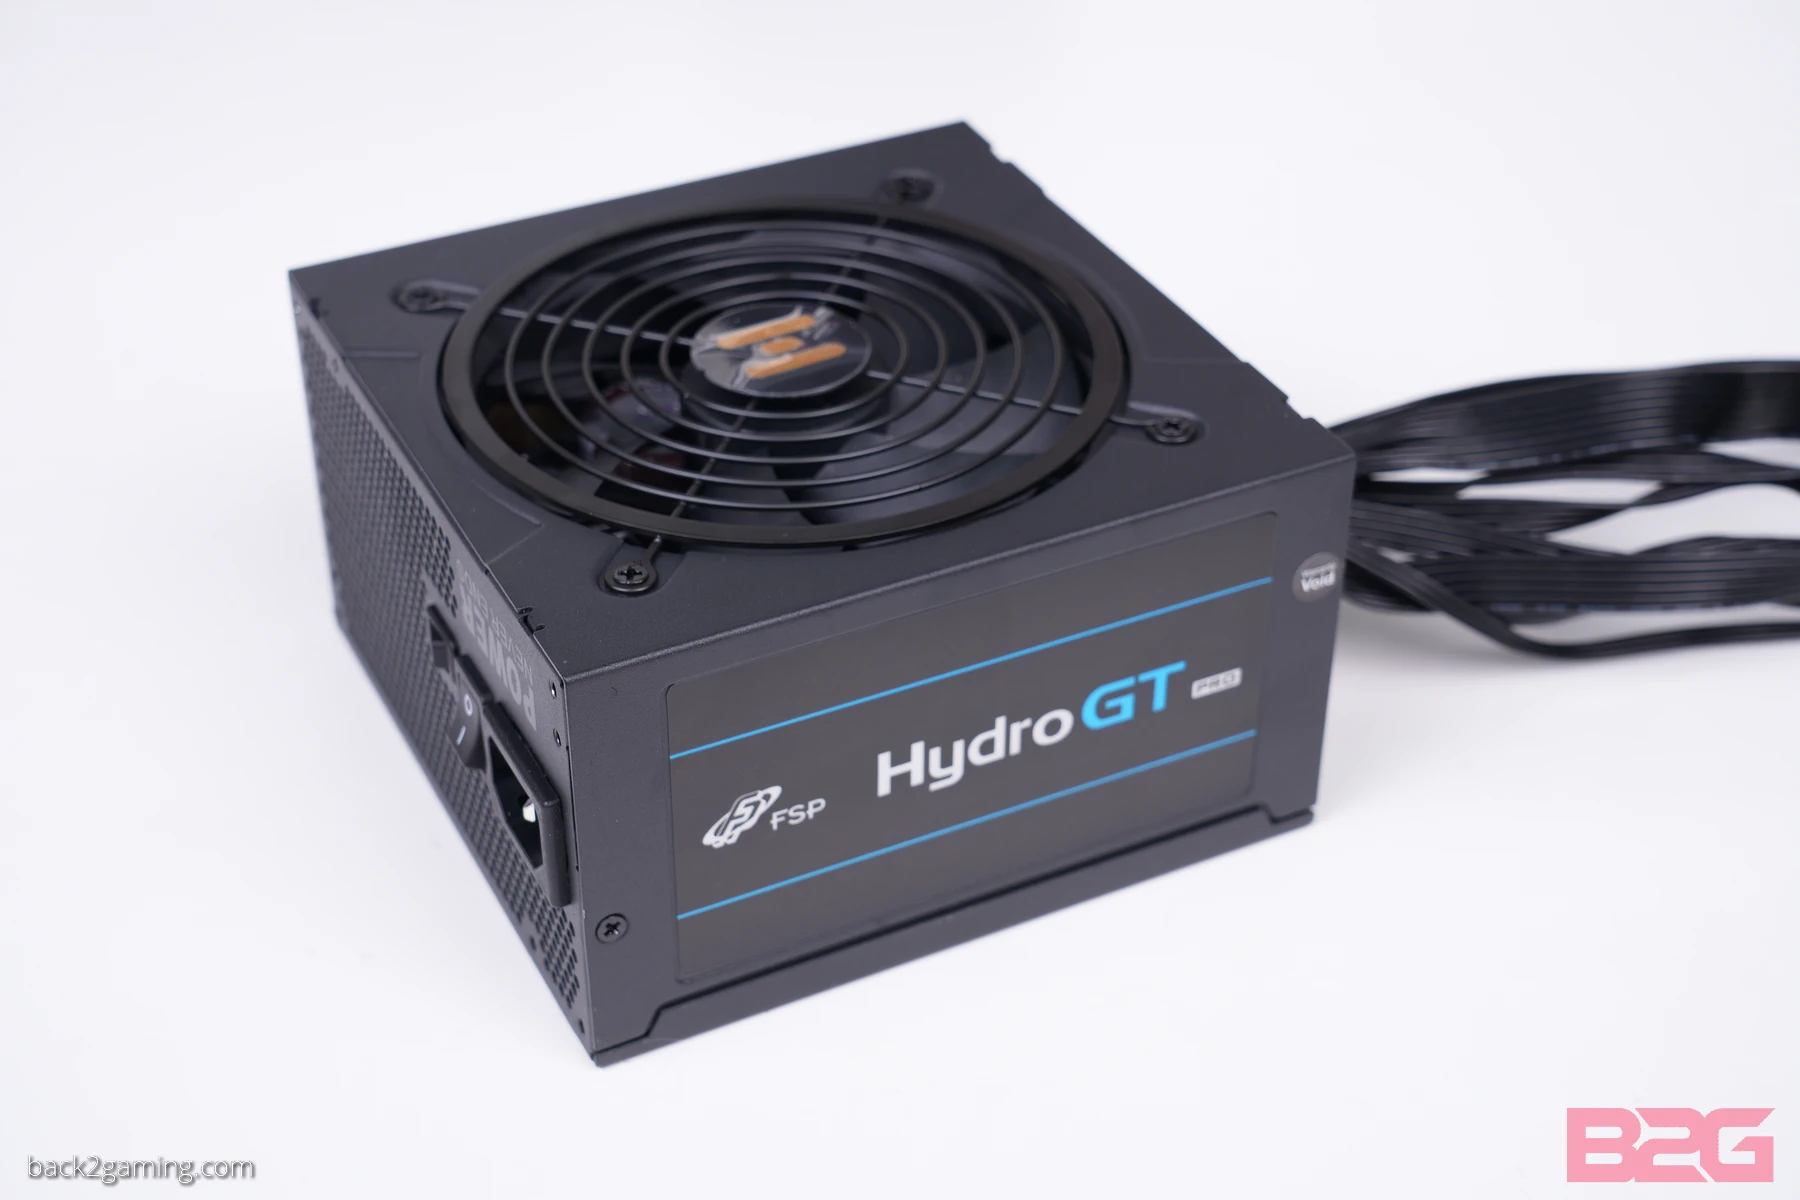 Fsp Hydro Gt Pro 1000W Psu Review